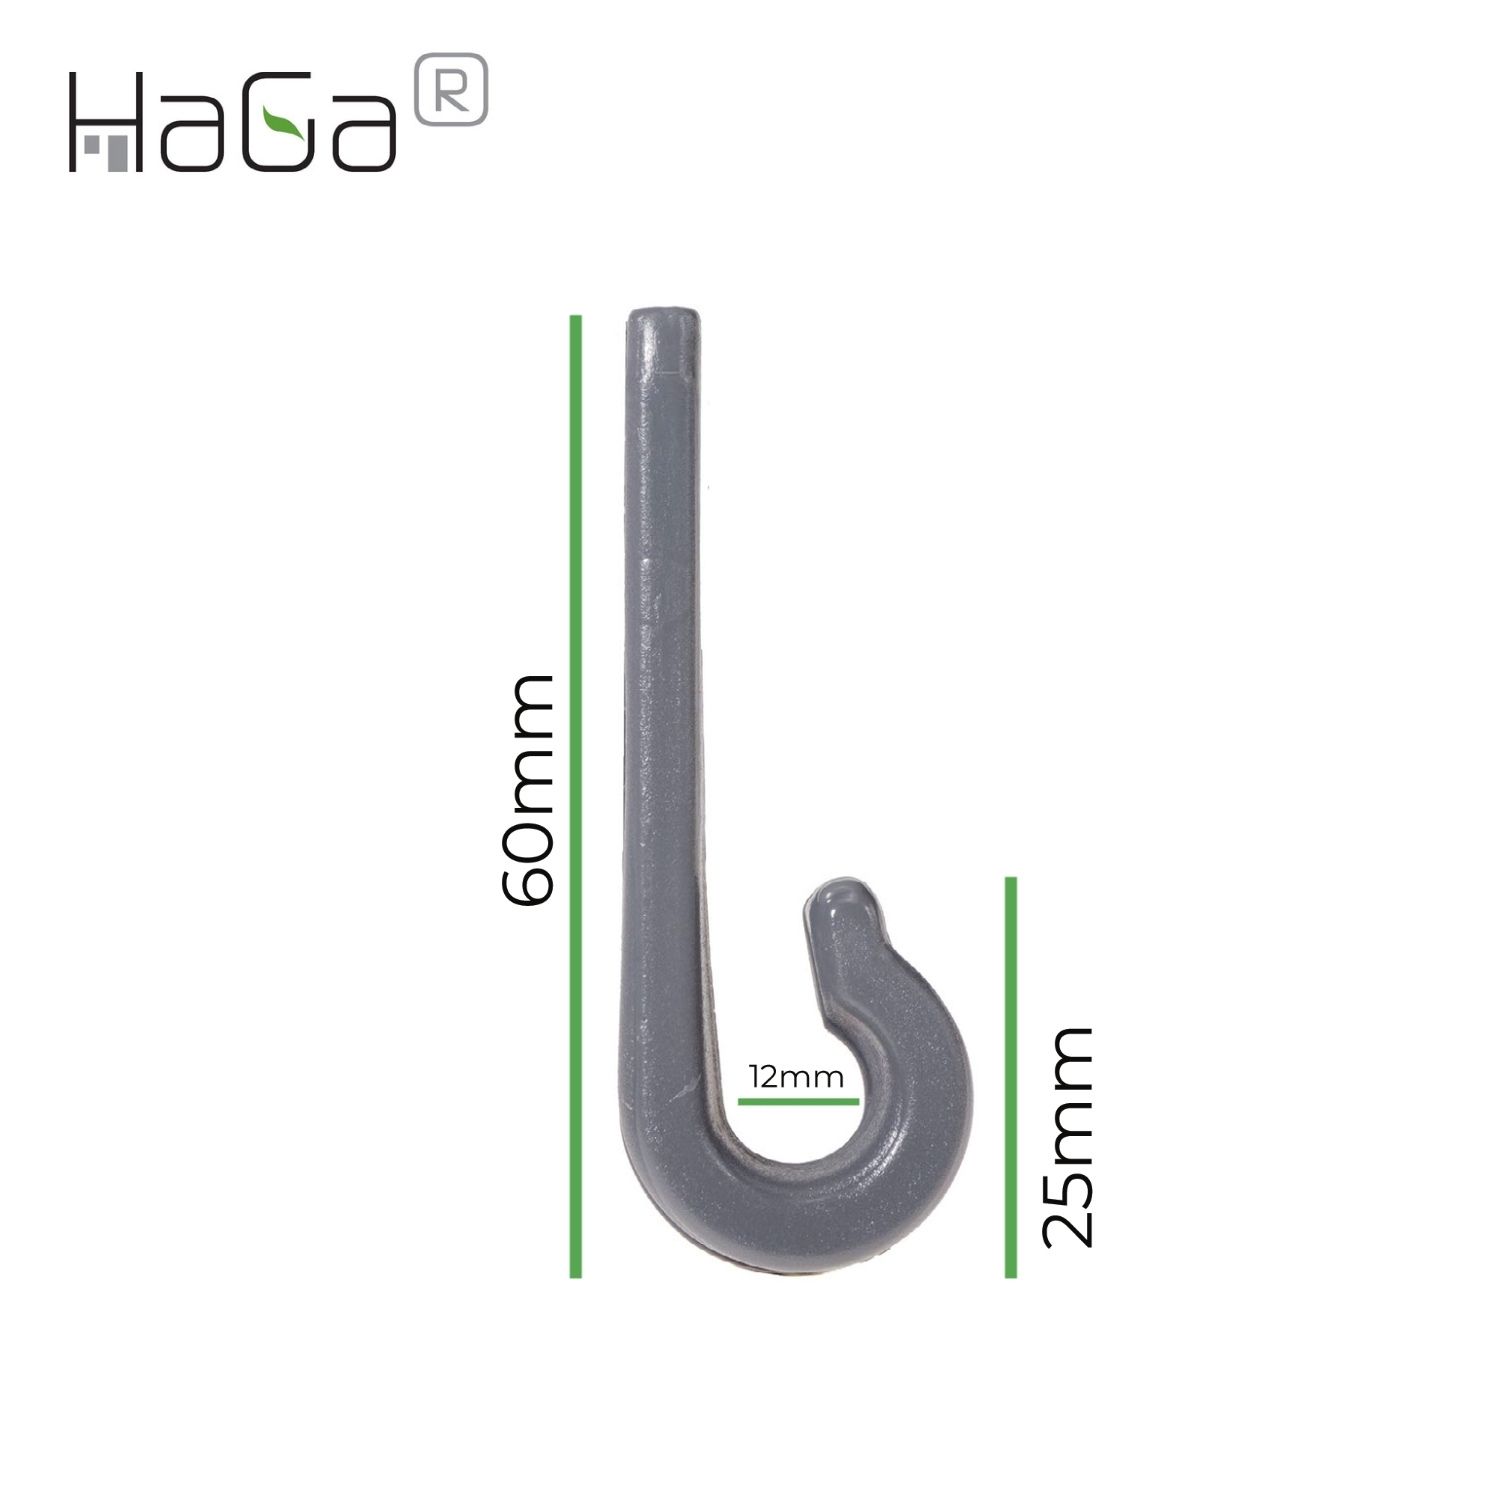 Planenhaken Zweilochhaken für Schleuderverschluss HaGa® 60mm x 18mm 100 Stück